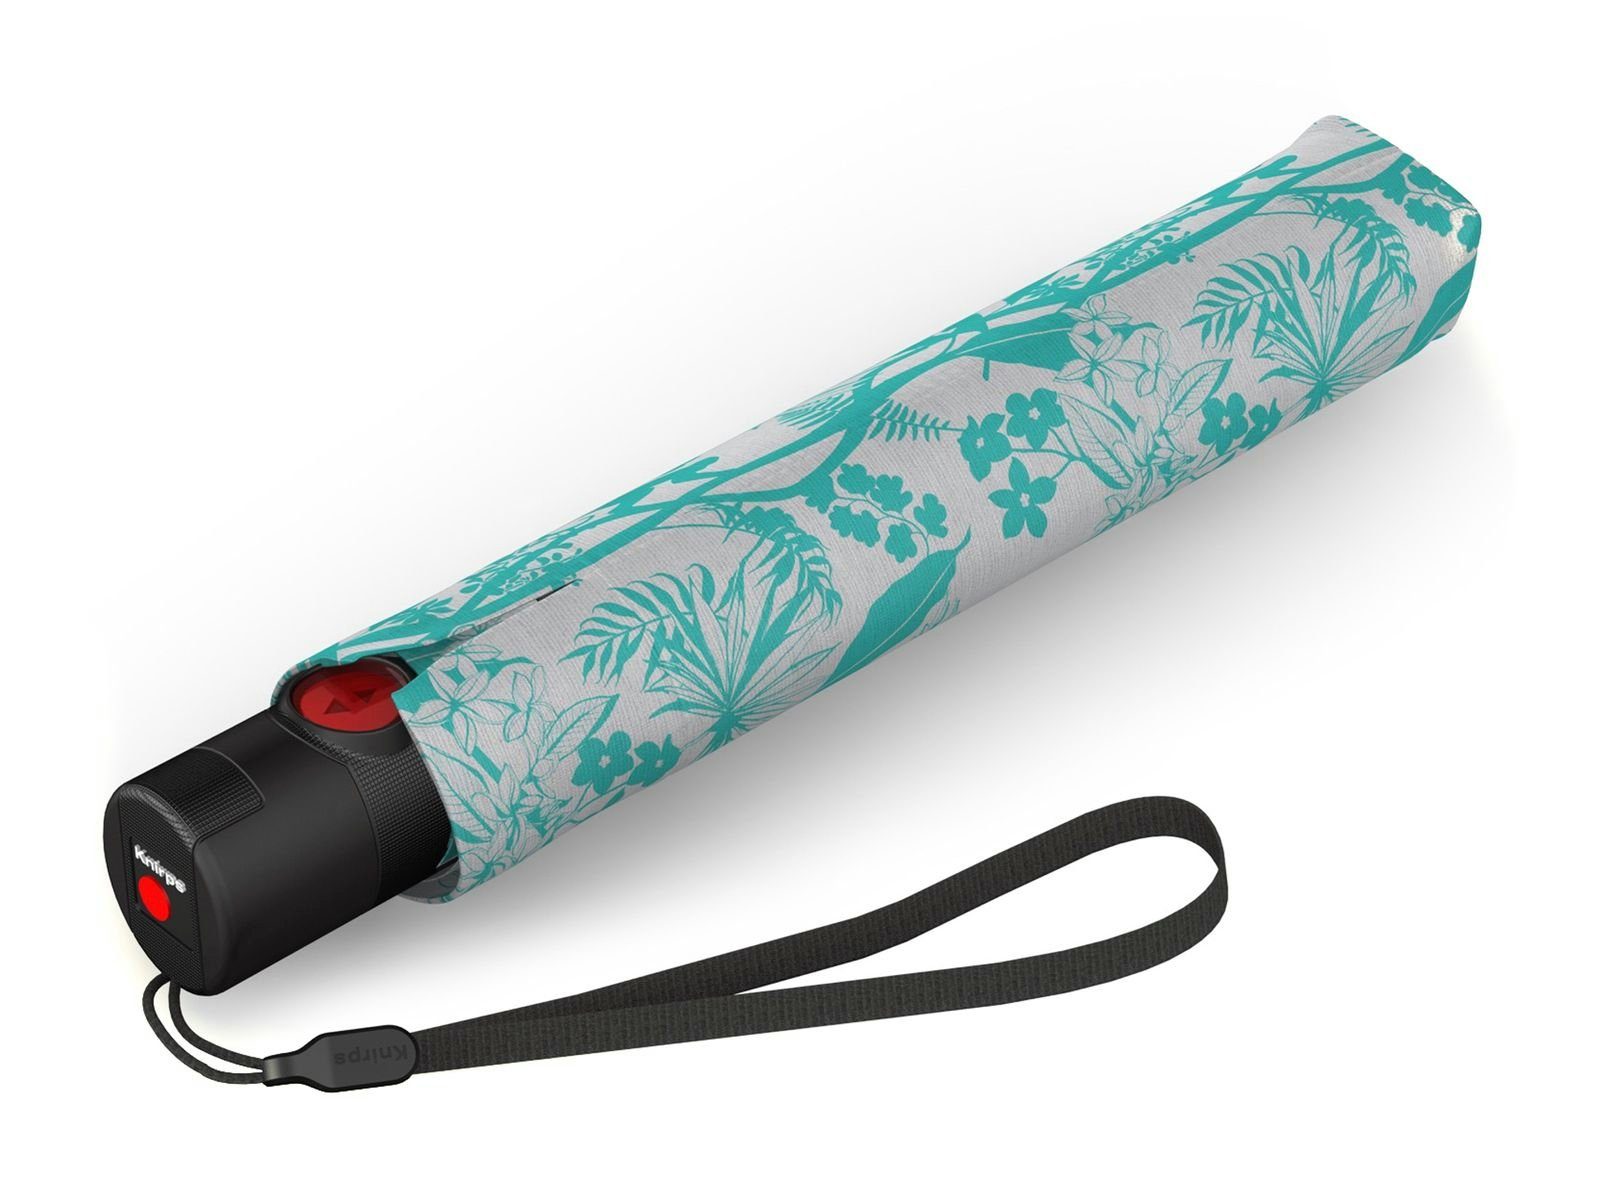 Auf-Zu-Automatik, Knirps® schlanker, leichteste mit Duomatic-Funktion der Schirm leichter Knirps mit Taschenregenschirm